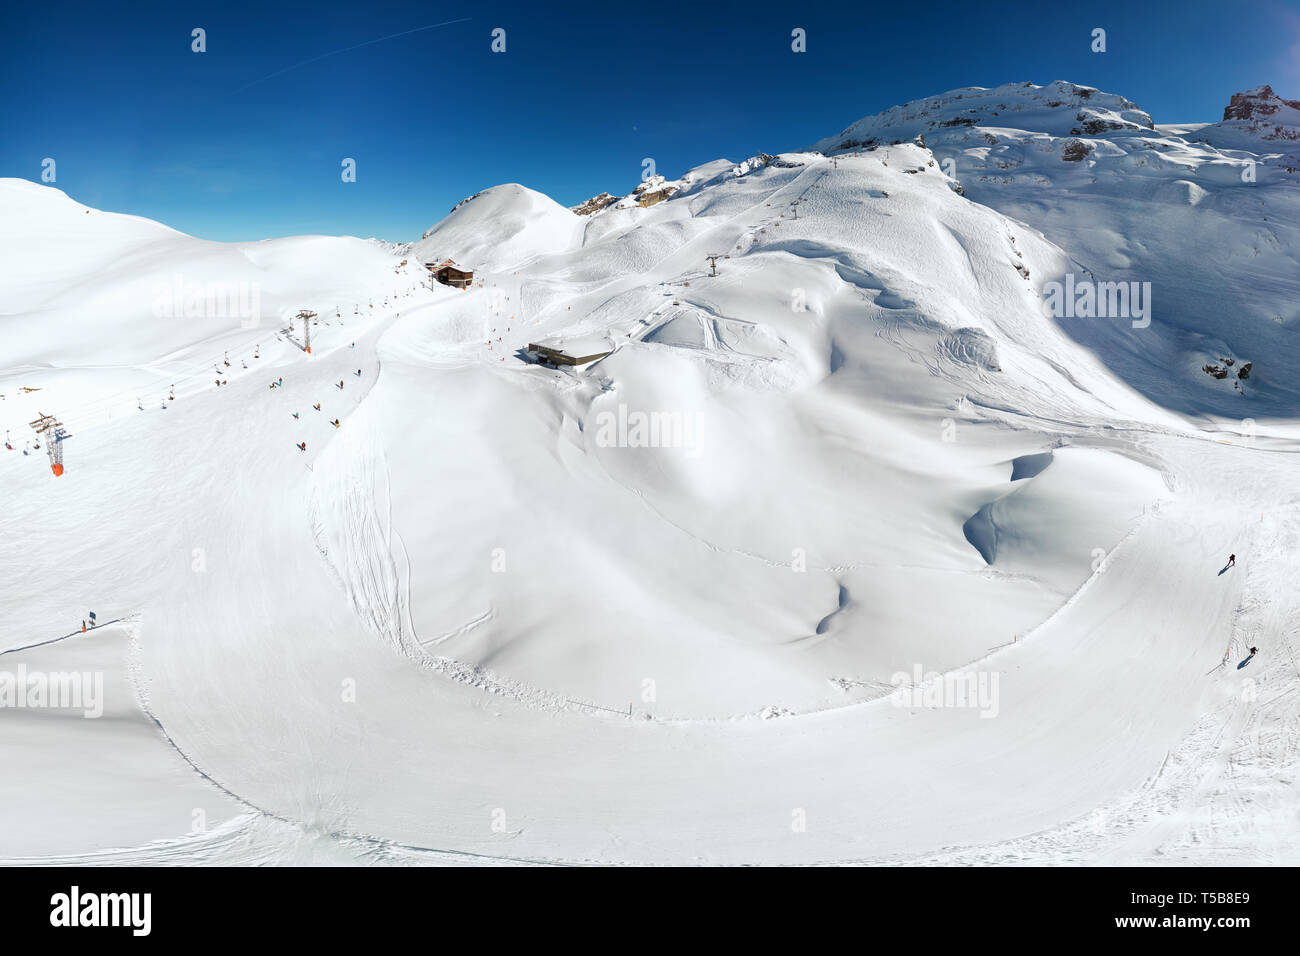 Paisaje invernal con Alpes Suizos. Los esquiadores esquiar en la famosa estación de esquí Engelgerg - Titlis, Suiza, Europa. Foto de stock